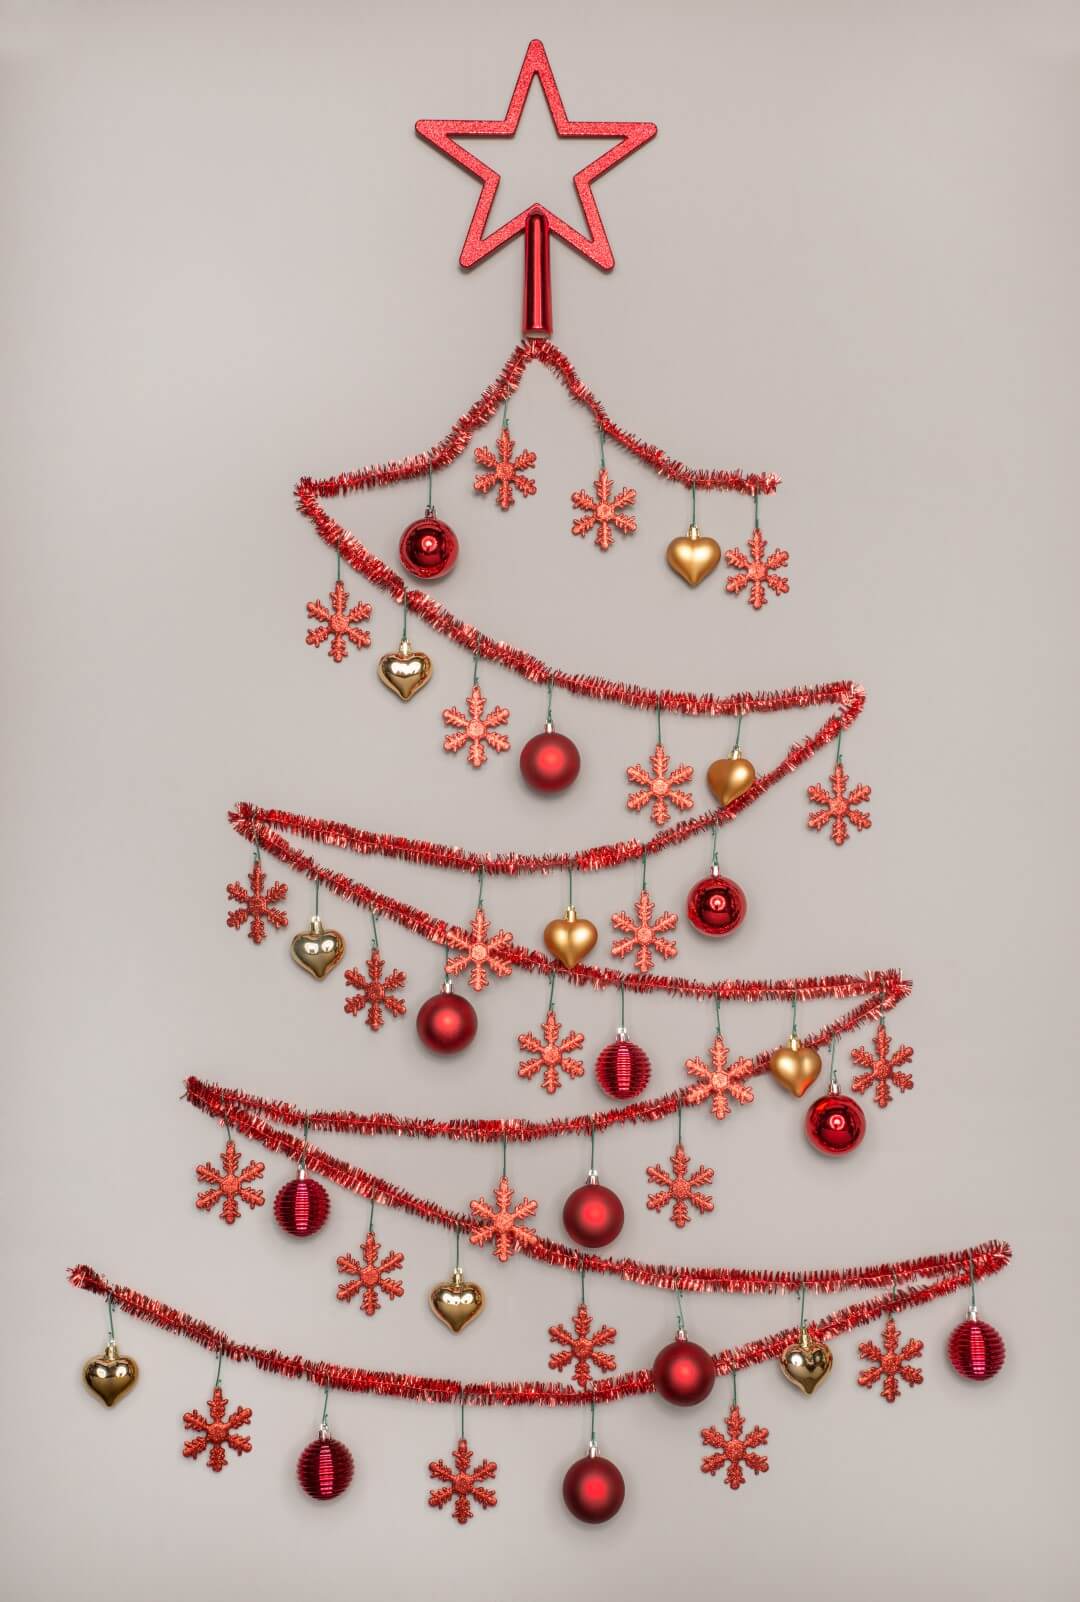 Tinsel Christmas tree on the wall